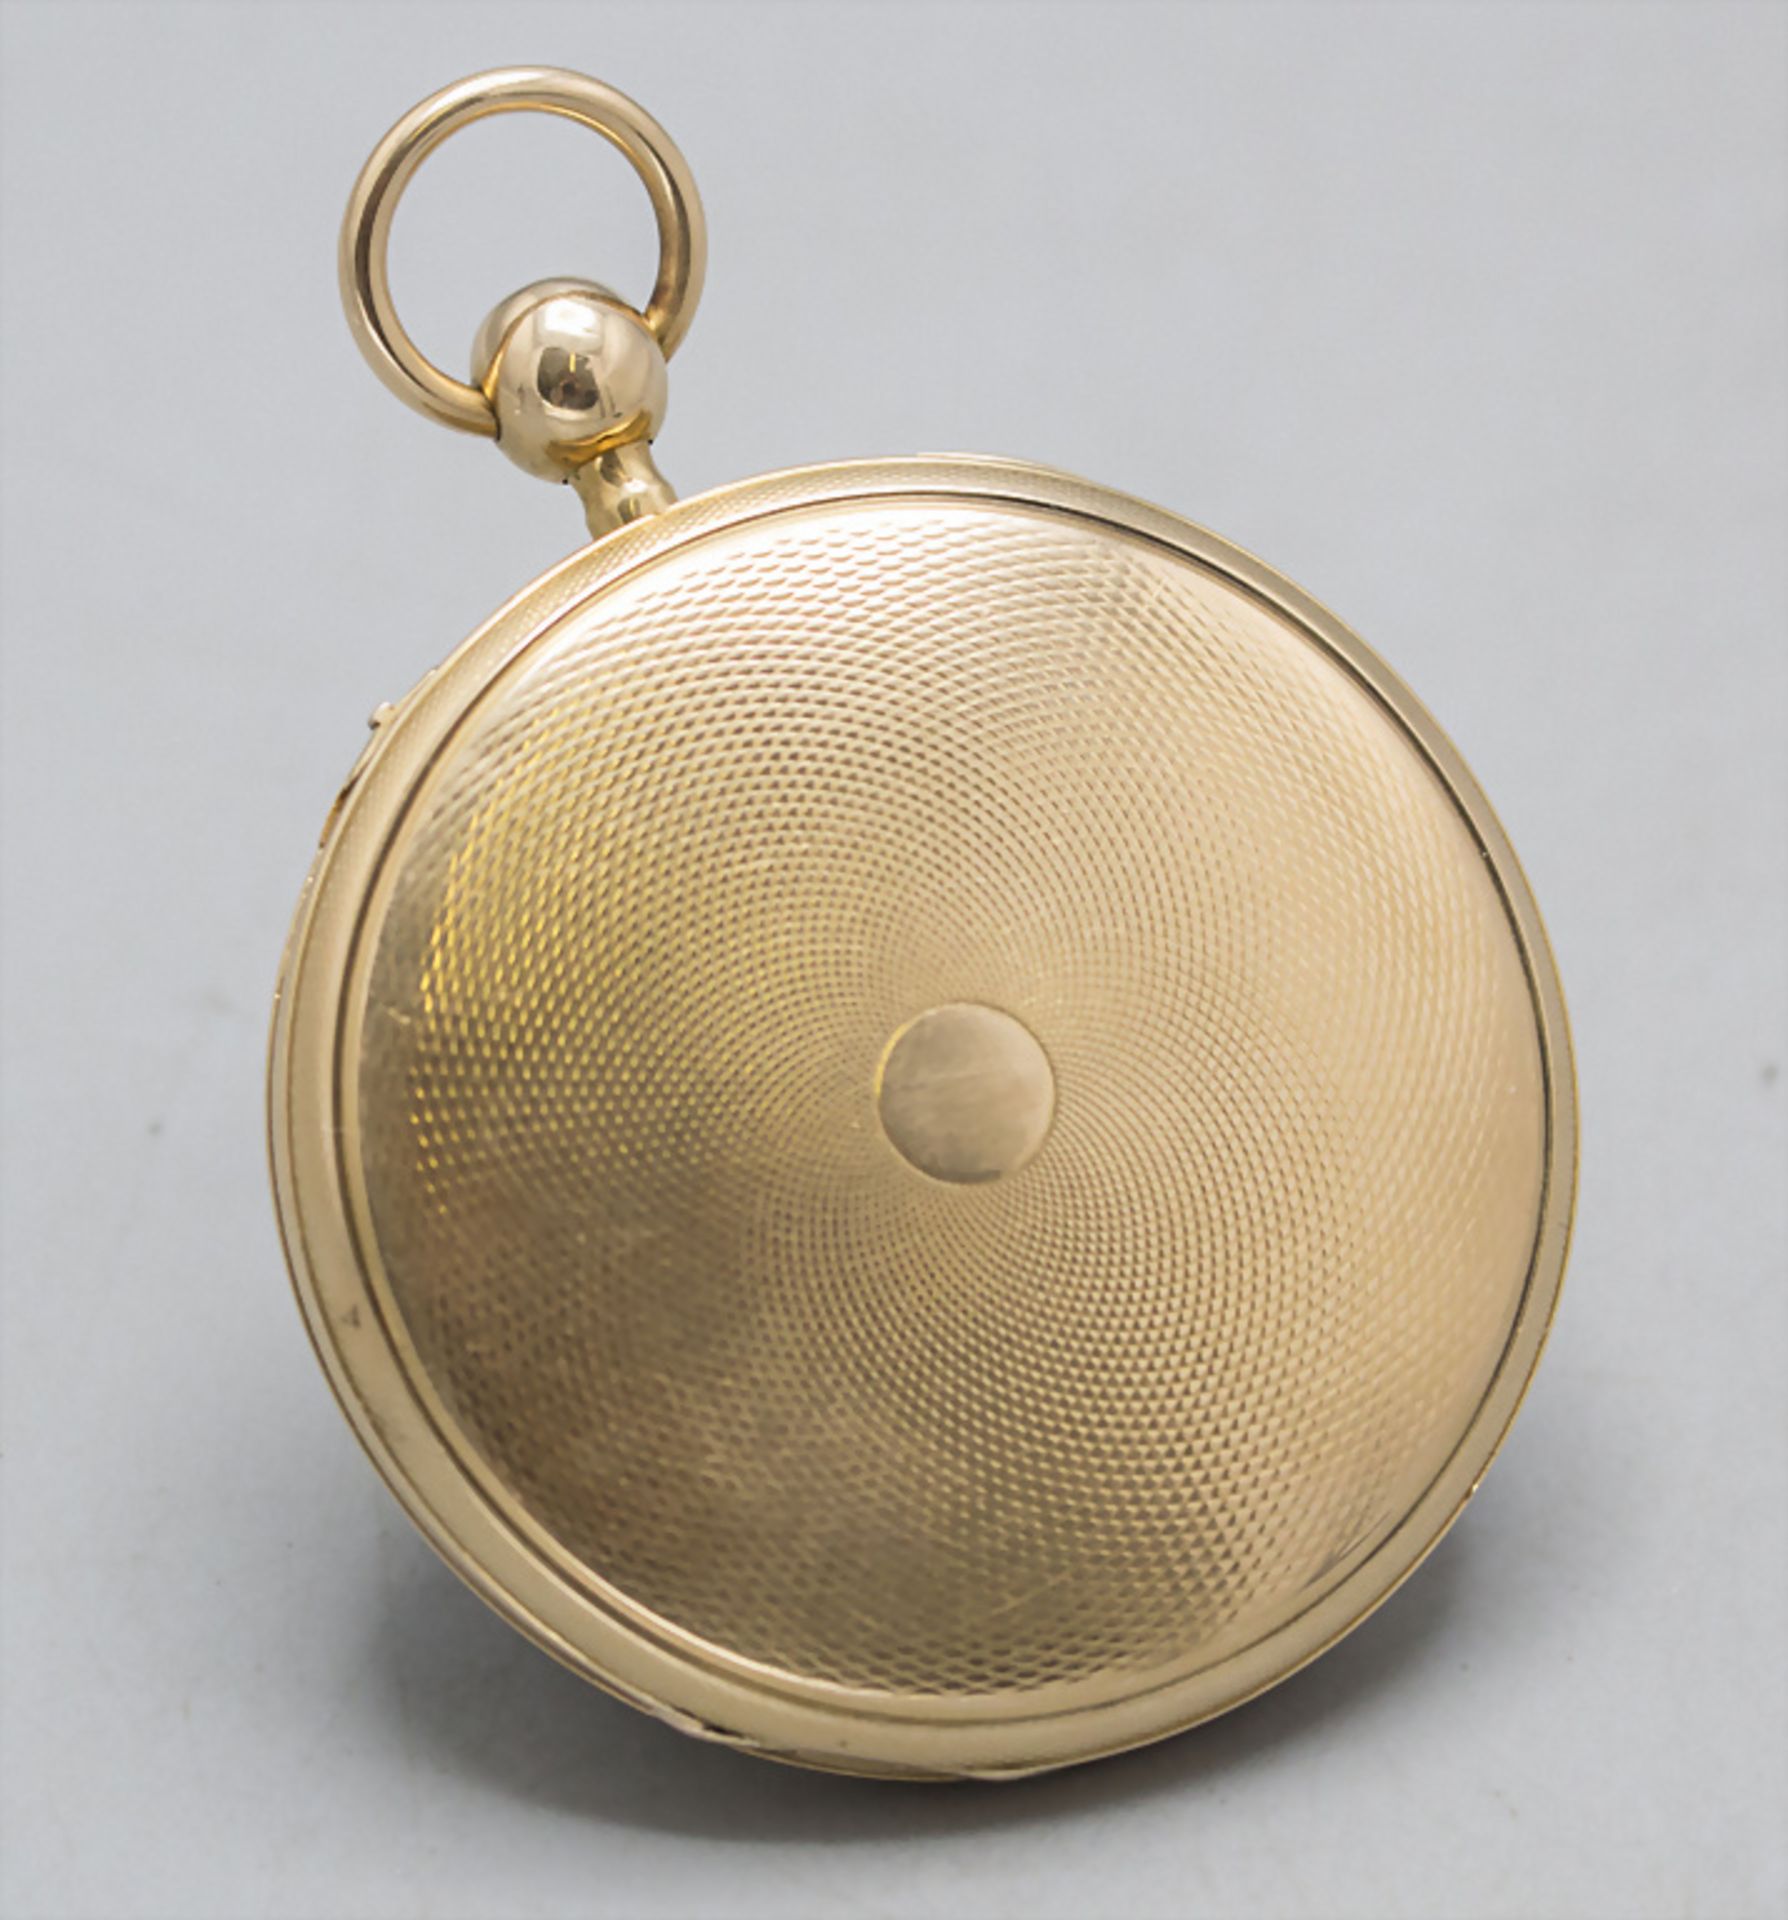 Offene Herrentaschenuhr ¼ Std.-Repetition / An 18 ct gold pocket watch, Schweiz/Swiss, um 1820 - Image 8 of 8